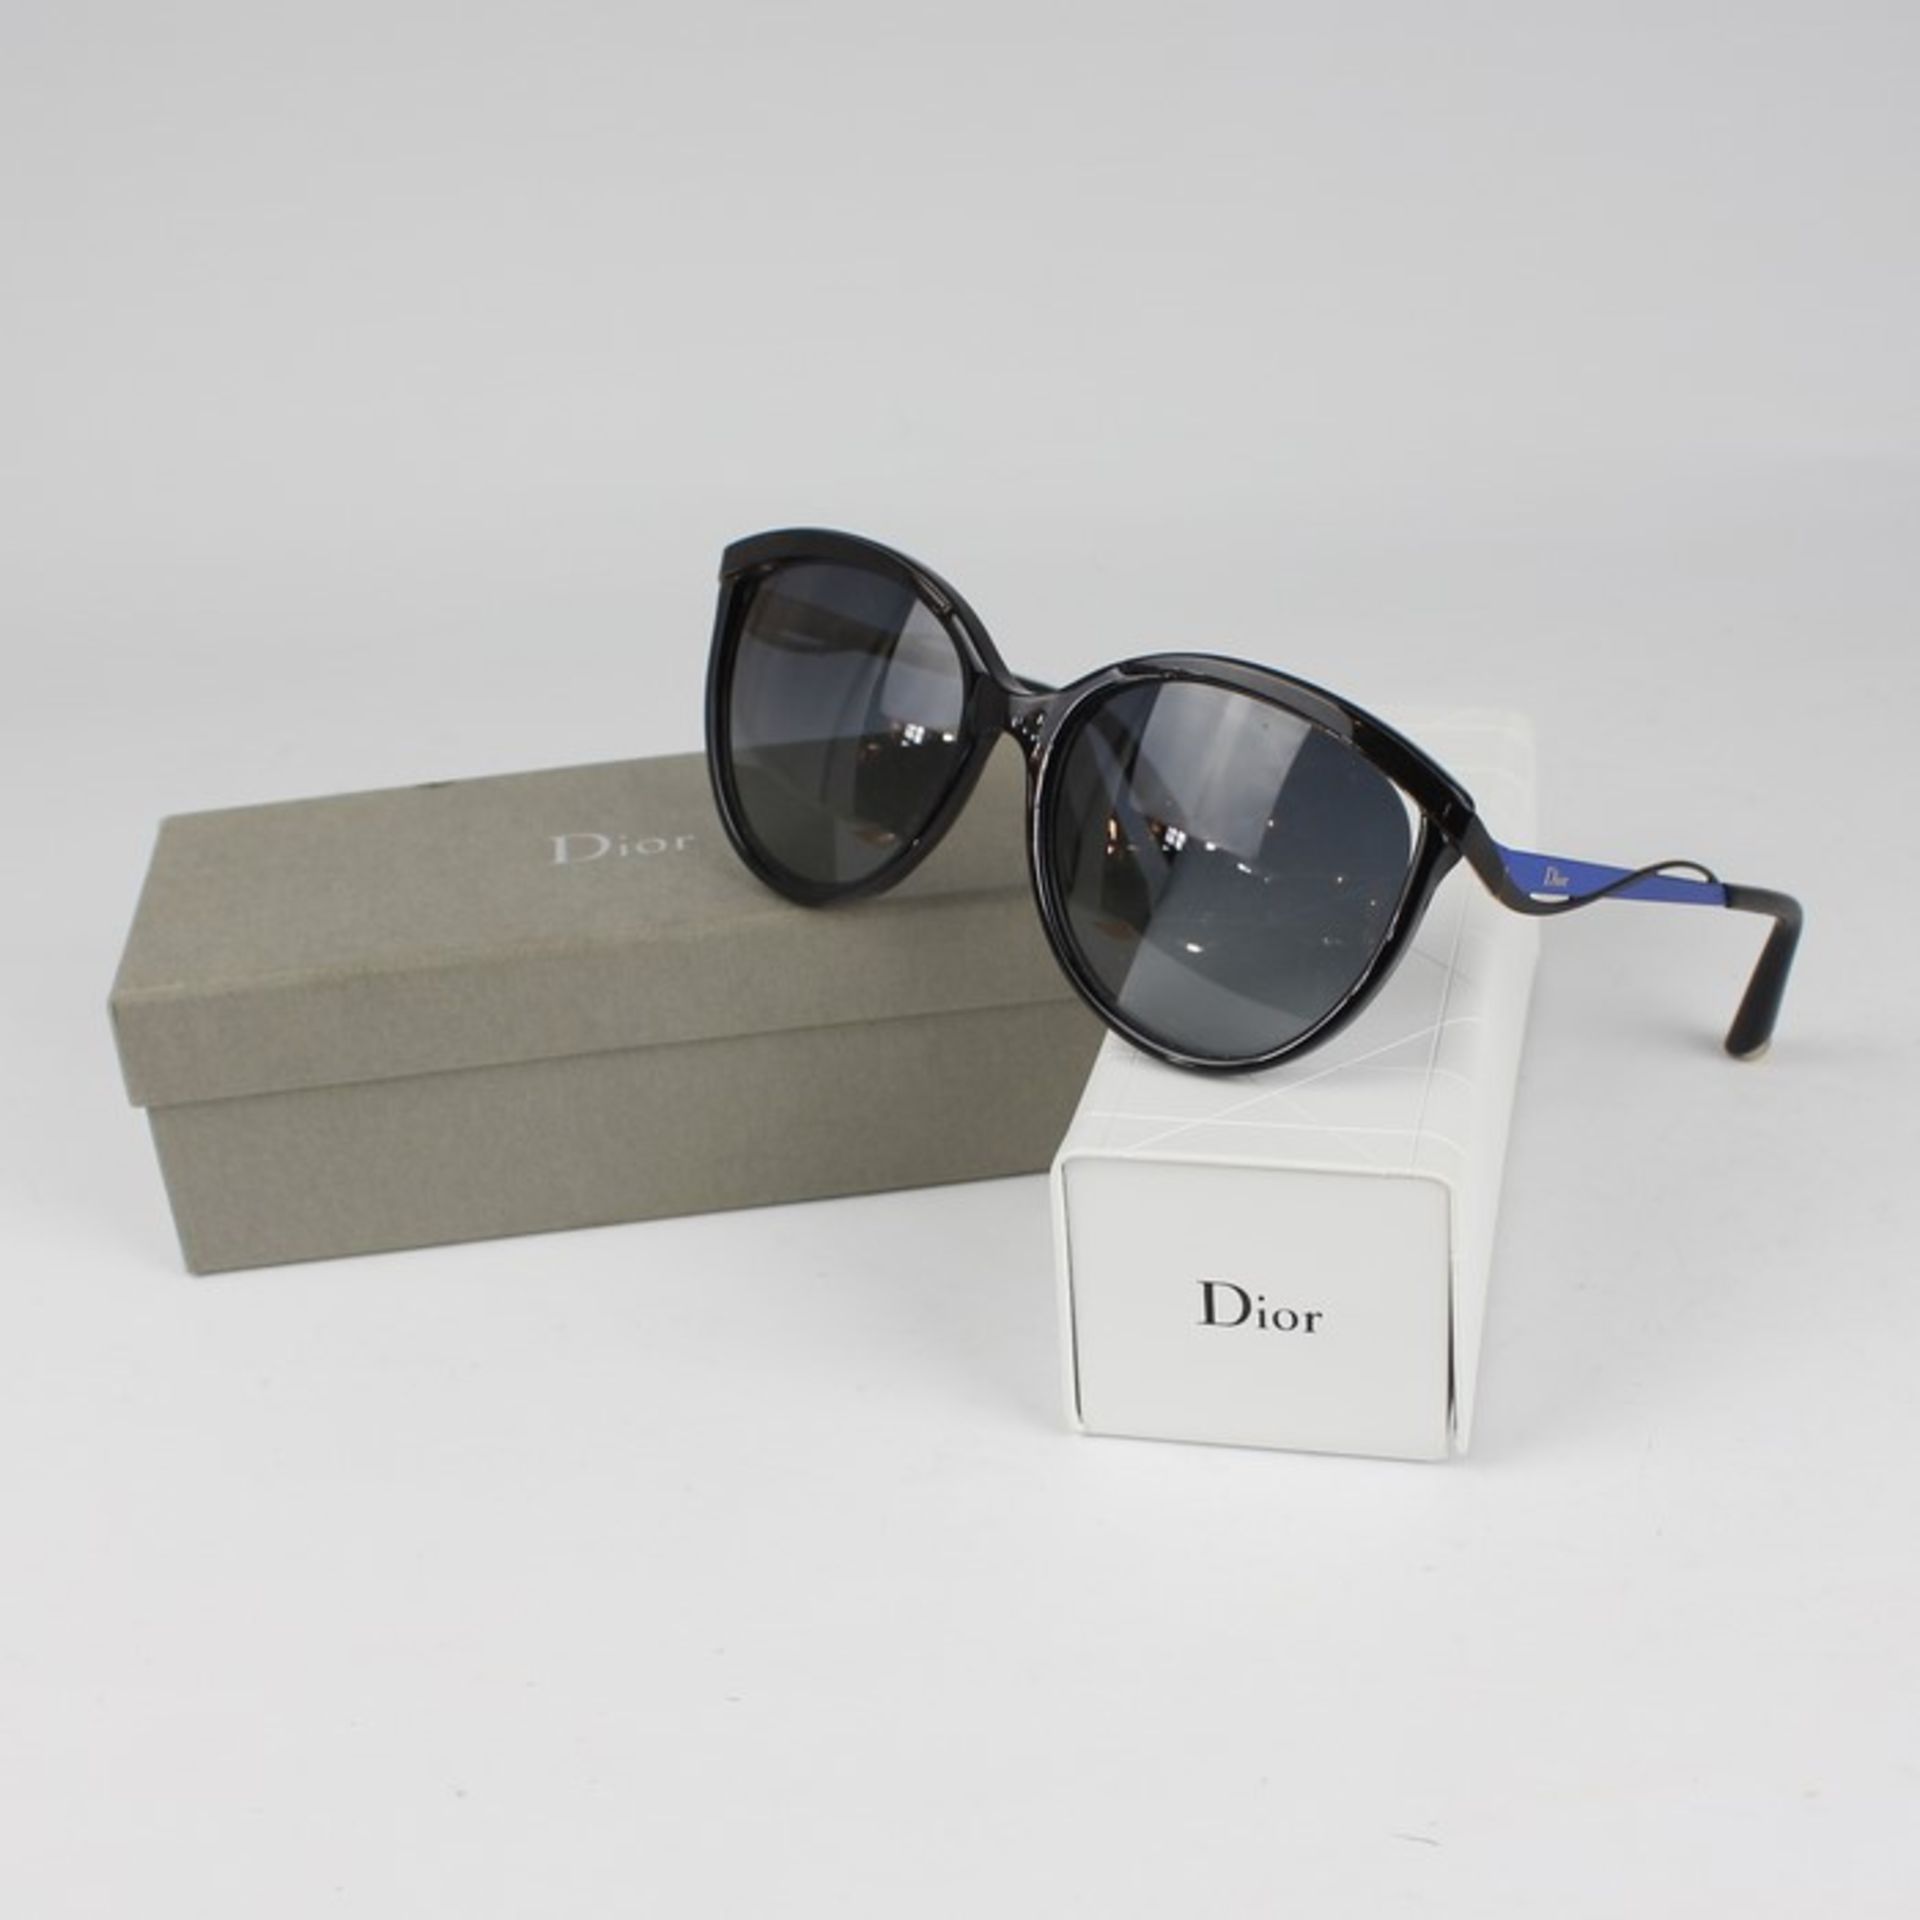 Christian Dior - SonnenbrilleMetall, Kunststoff, schwarz, blau, min. Gebrauchssp., Originaletui u.